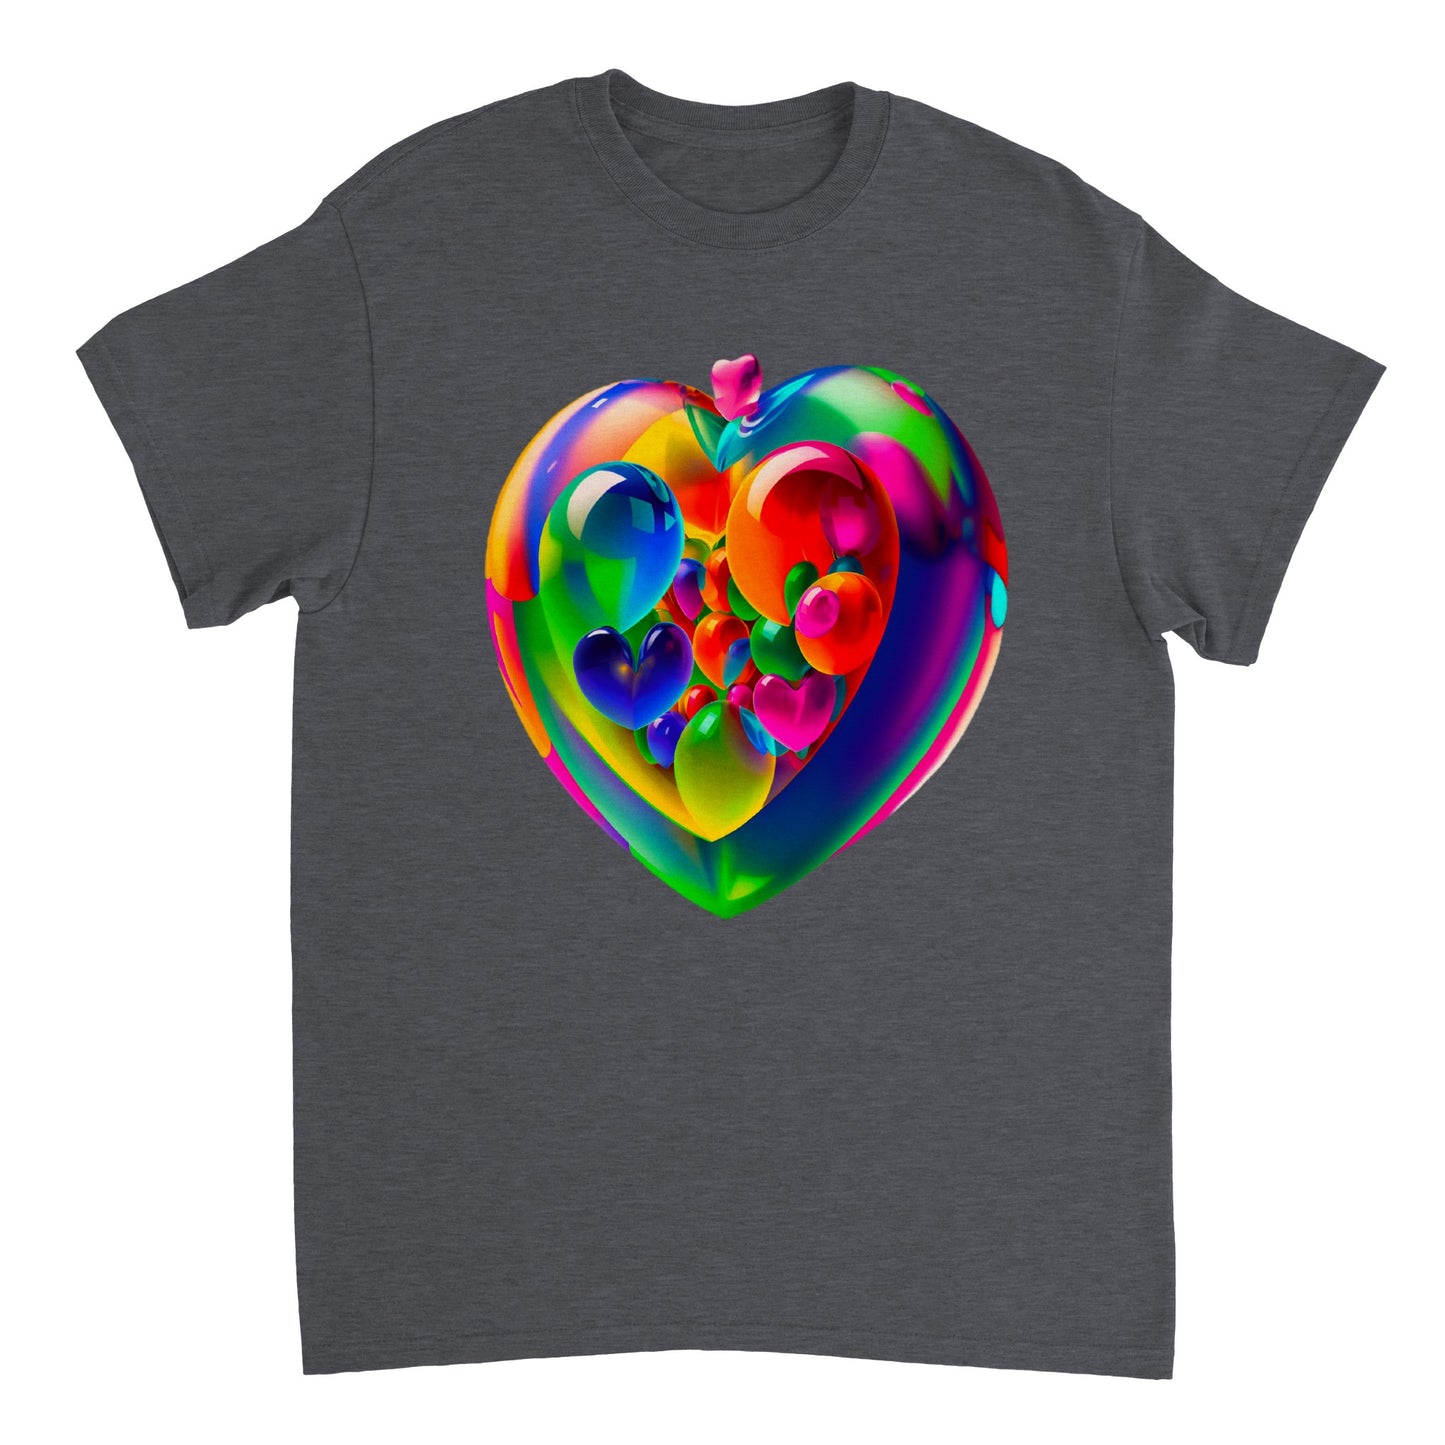 Love Heart - Heavyweight Unisex Crewneck T-shirt 47